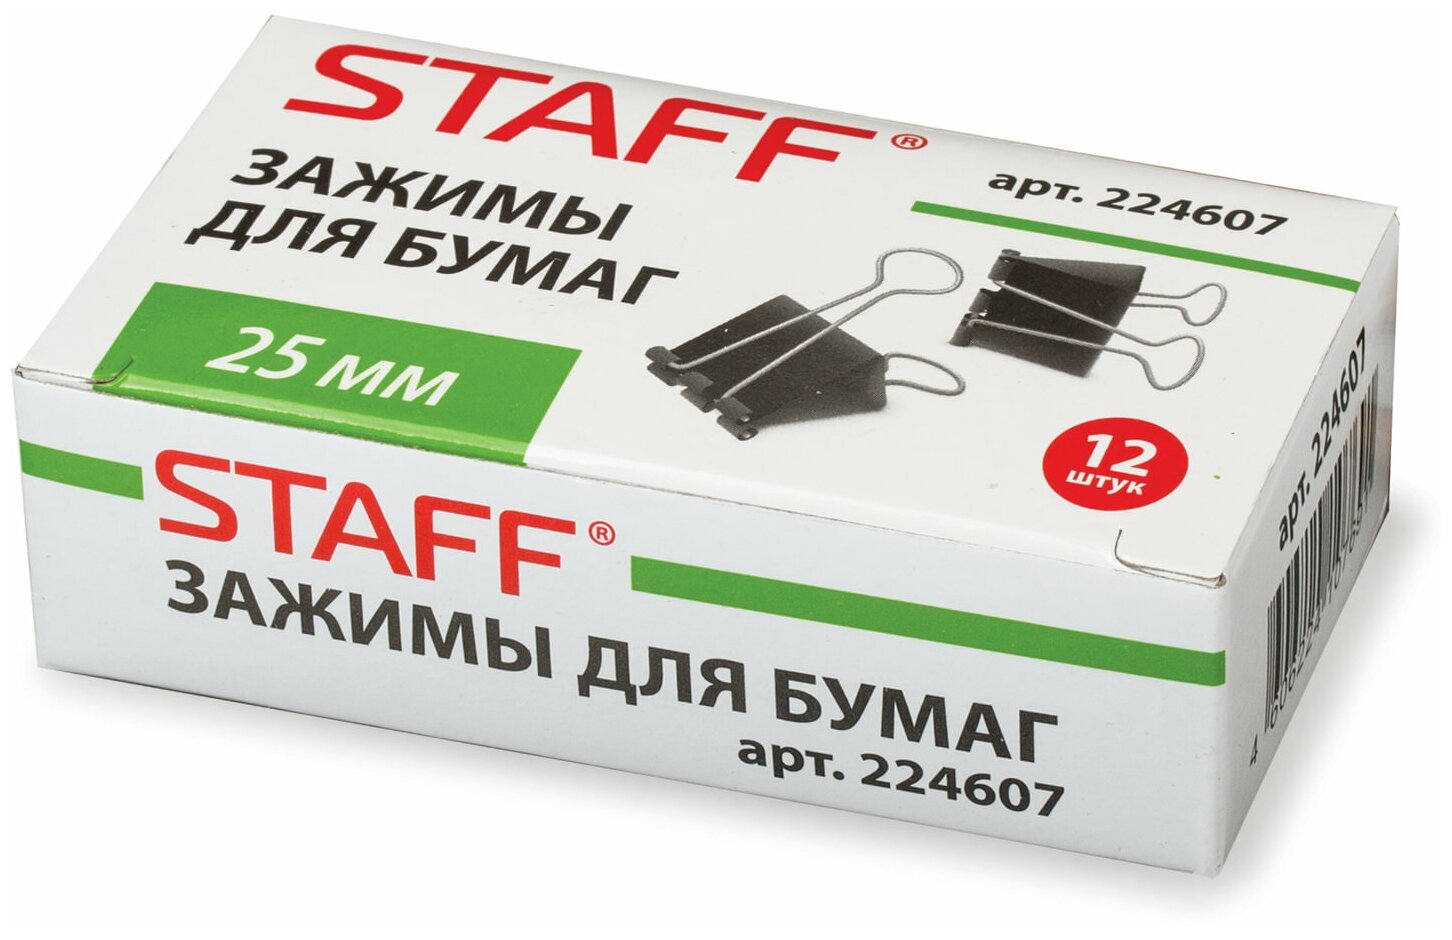 Зажимы для бумаг Staff 12 шт, 25 мм, на 100 листов, черные (224607)